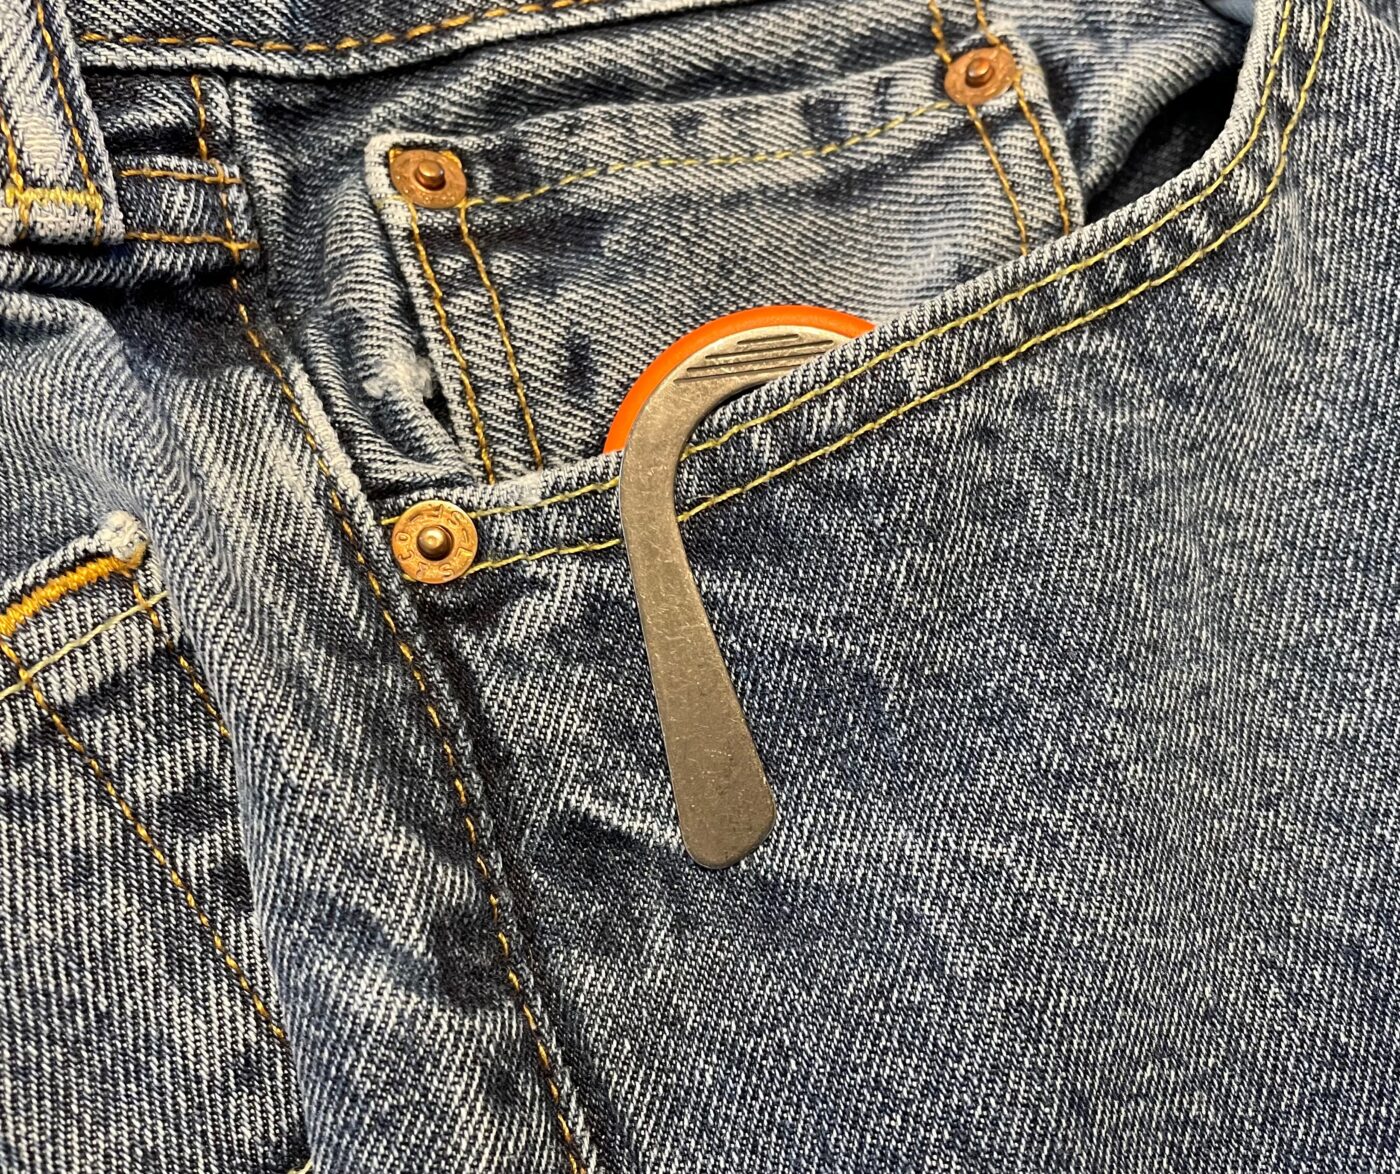 pocket clip carry for crkt provoke knife